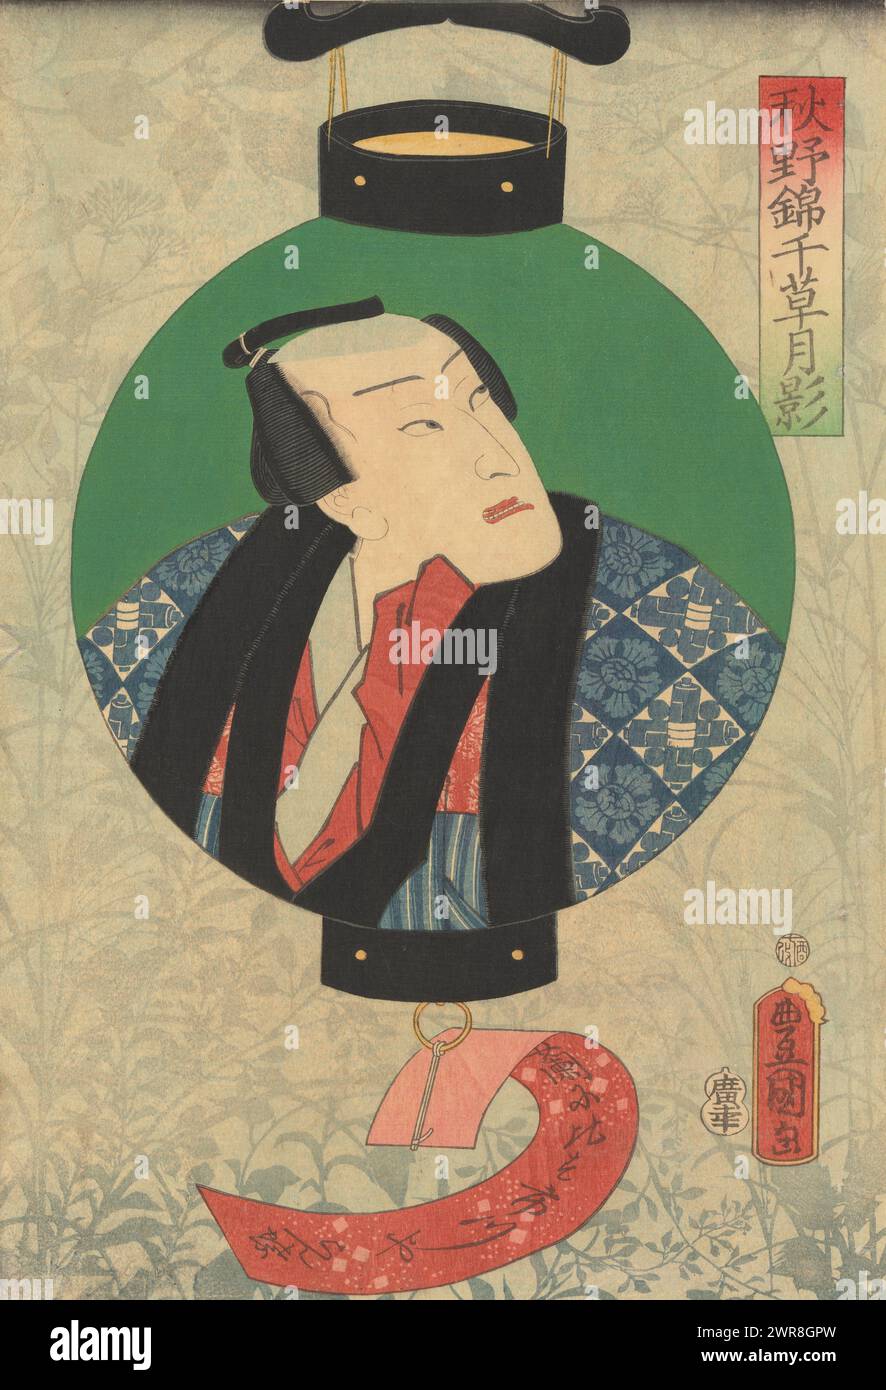 L'attore Nakamura Shikan raffigurato in una lampada, Una lanterna di carta verde con il ritratto del busto di un uomo giapponese, che guarda a destra. Sotto la lanterna c'è una striscia rossa di carta su cui è scritto un poema. Su sfondo verde-blu con piante autunnali. L'uomo raffigurato è l'attore kabuki Nakamura Shikan nel ruolo di Ichikawaya Ranchô. Lo sfondo raffigura un campo illuminato dalla luna in autunno., stampatore: Utagawa Kunisada (i), editore: Hirookaya Kôsuku, Giappone, luglio 1861, carta, xilografia a colori, altezza 365 mm x larghezza 246 mm, stampa Foto Stock